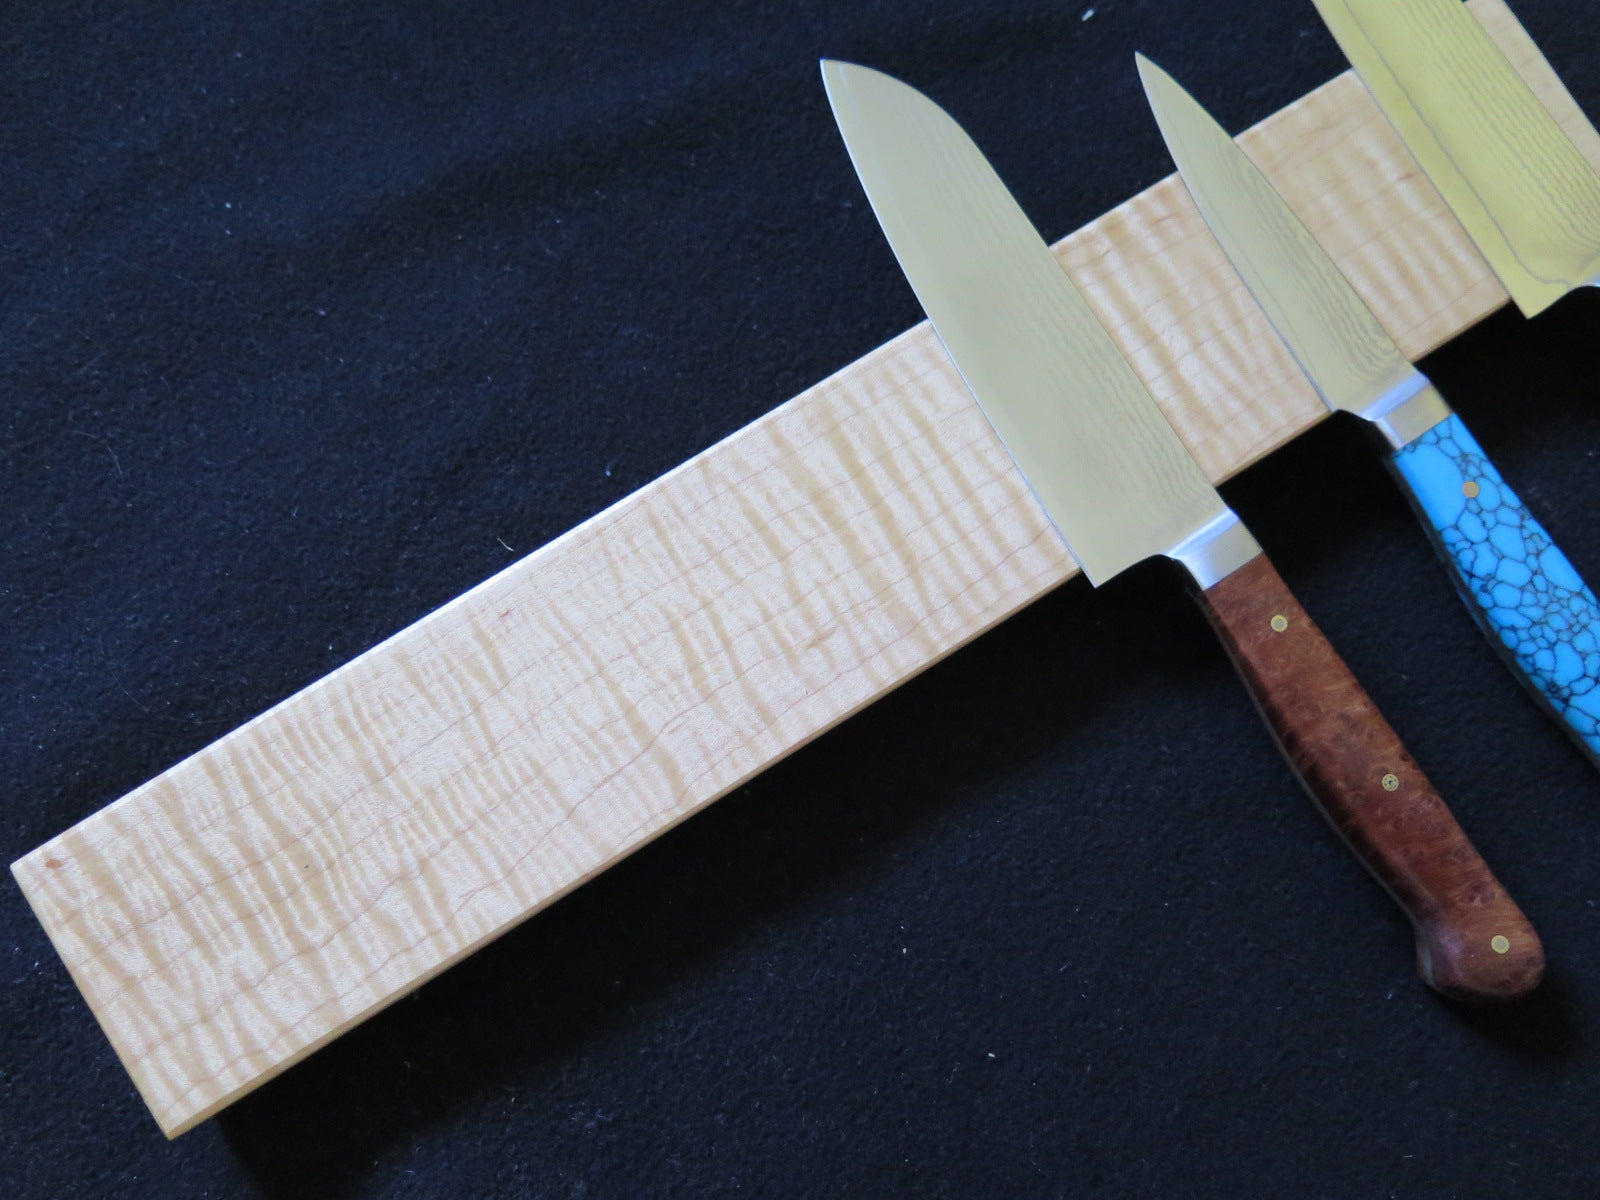 Tiger Maple Knife Rack, Magnetic Knife Rack, Knife Holder, Wood